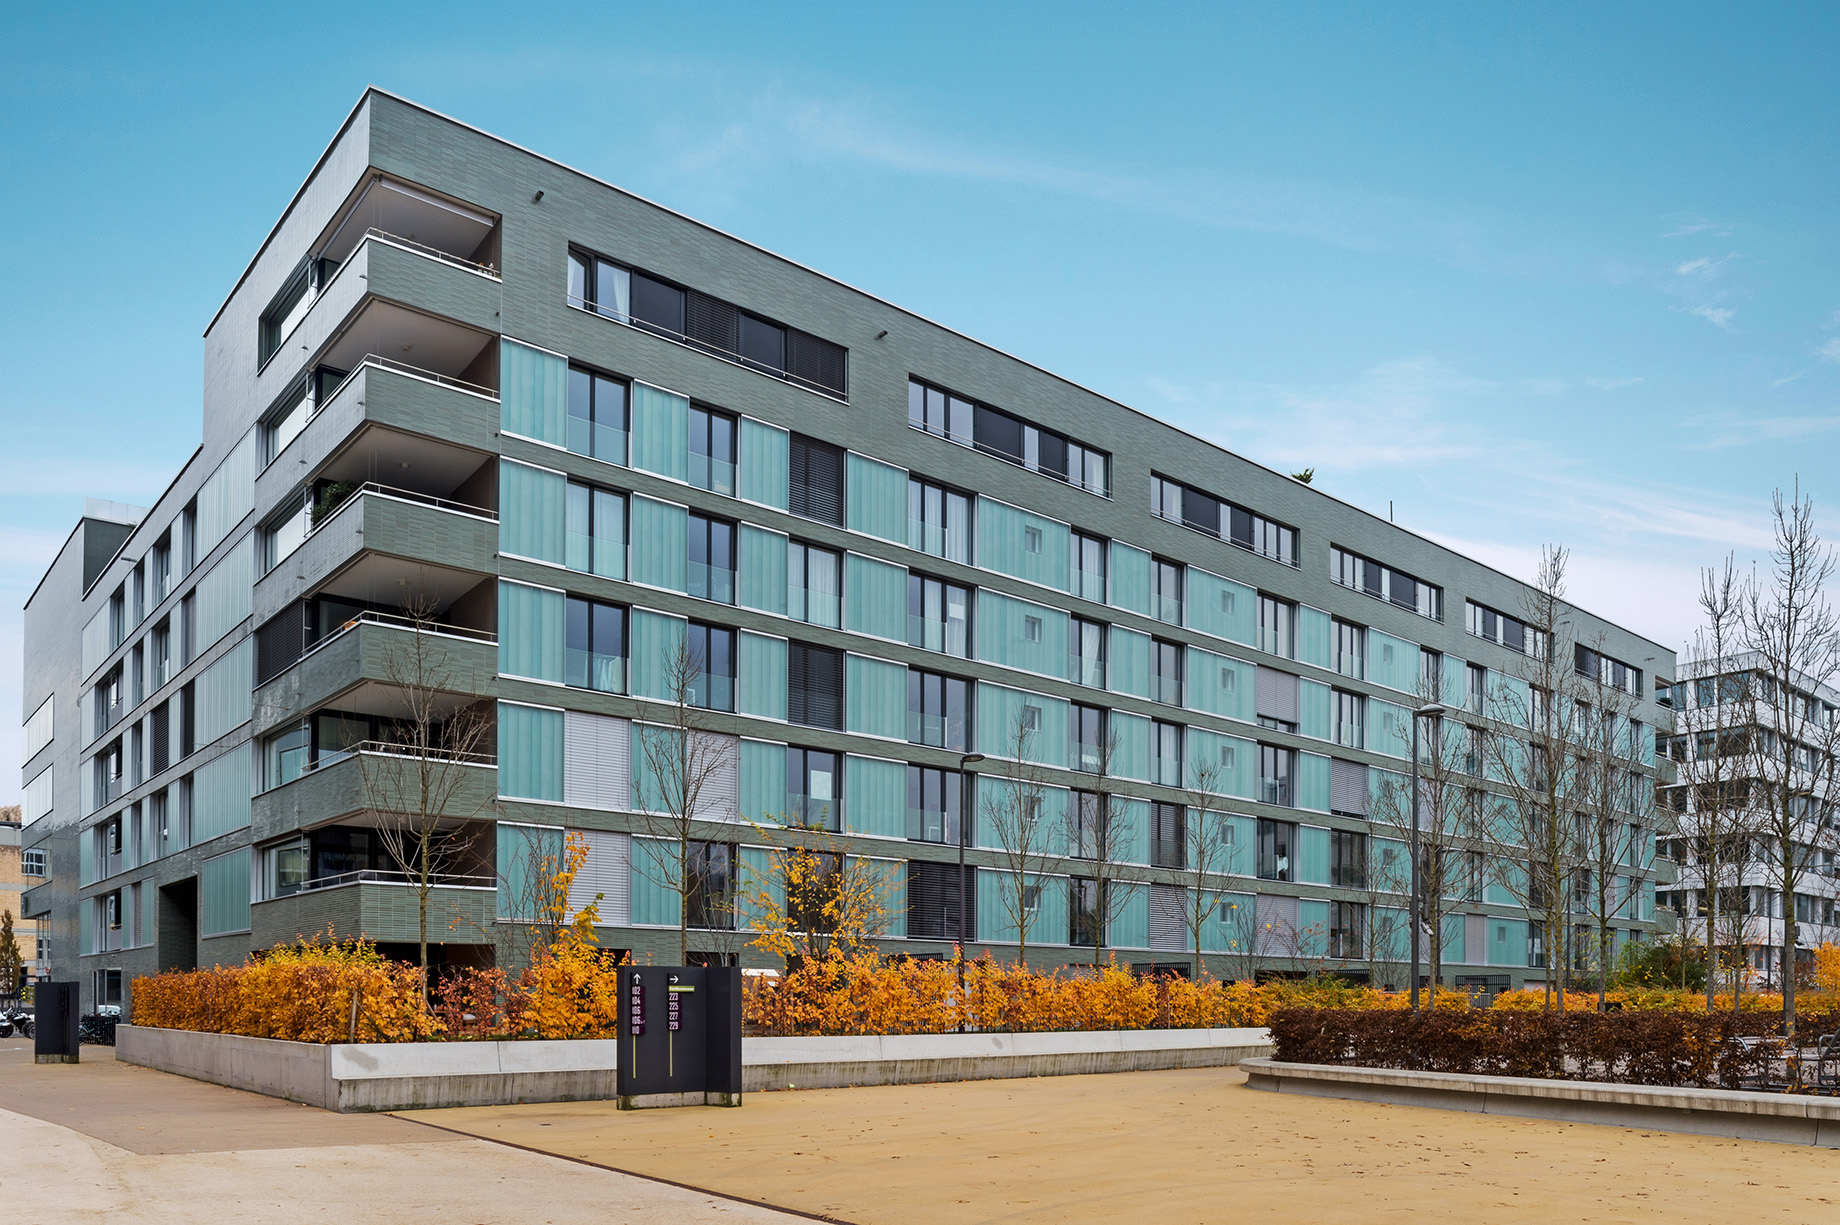 Photo : immeuble résidentiel moderne avec façades gris foncé et éléments turquoise ; devant, des aménagements extérieurs avec une végétation automnale luxuriante